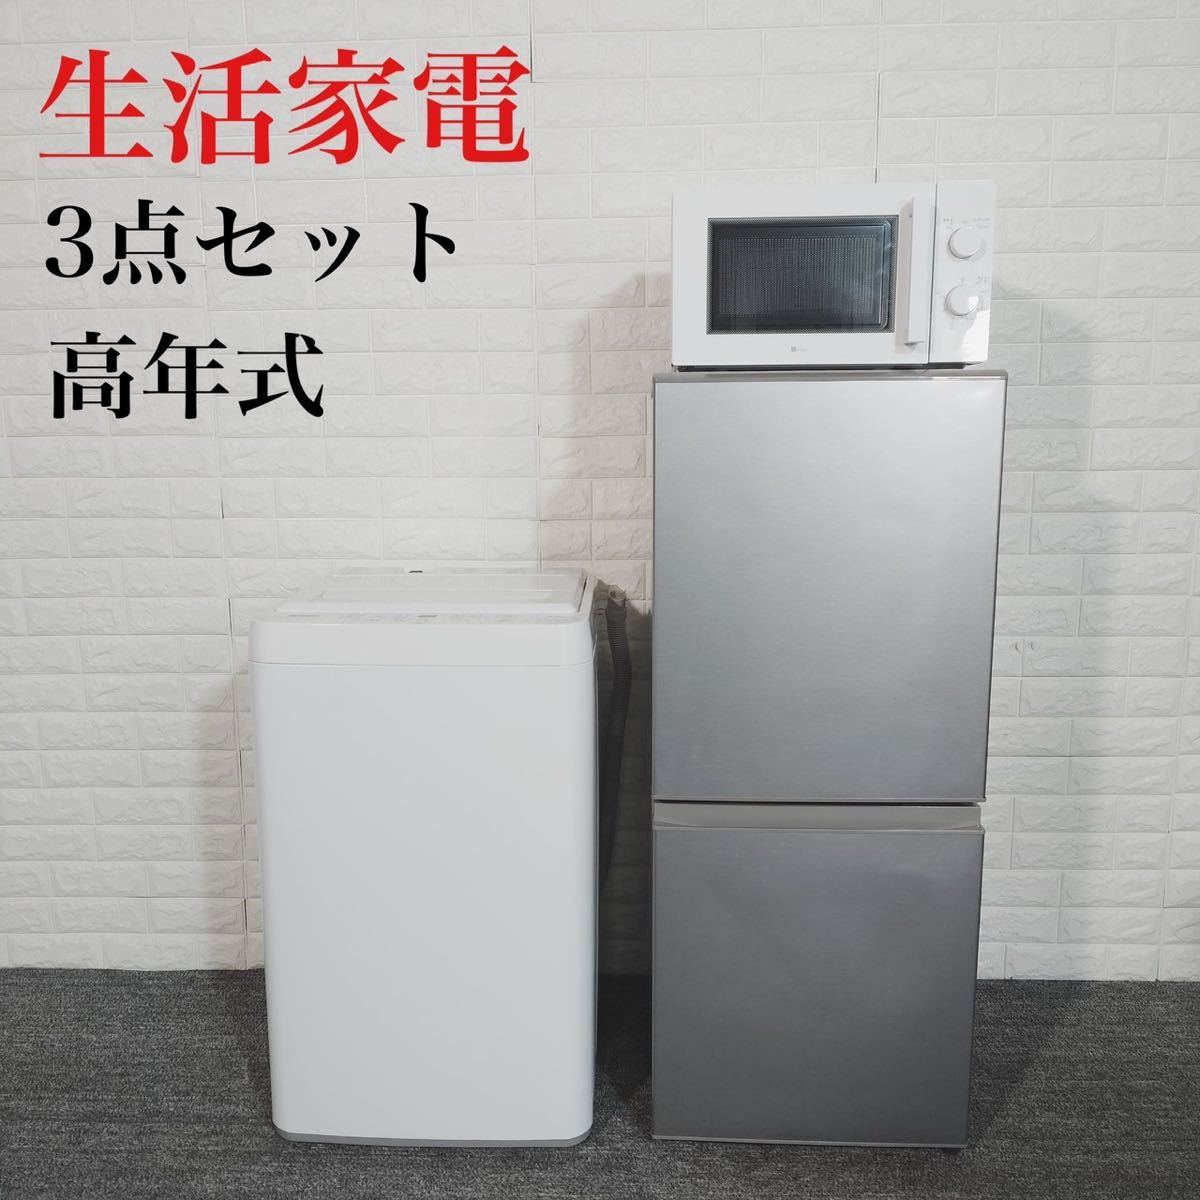 生活家電 3点セット 冷蔵庫 洗濯機 電子レンジ 1人暮し 高年式 C014